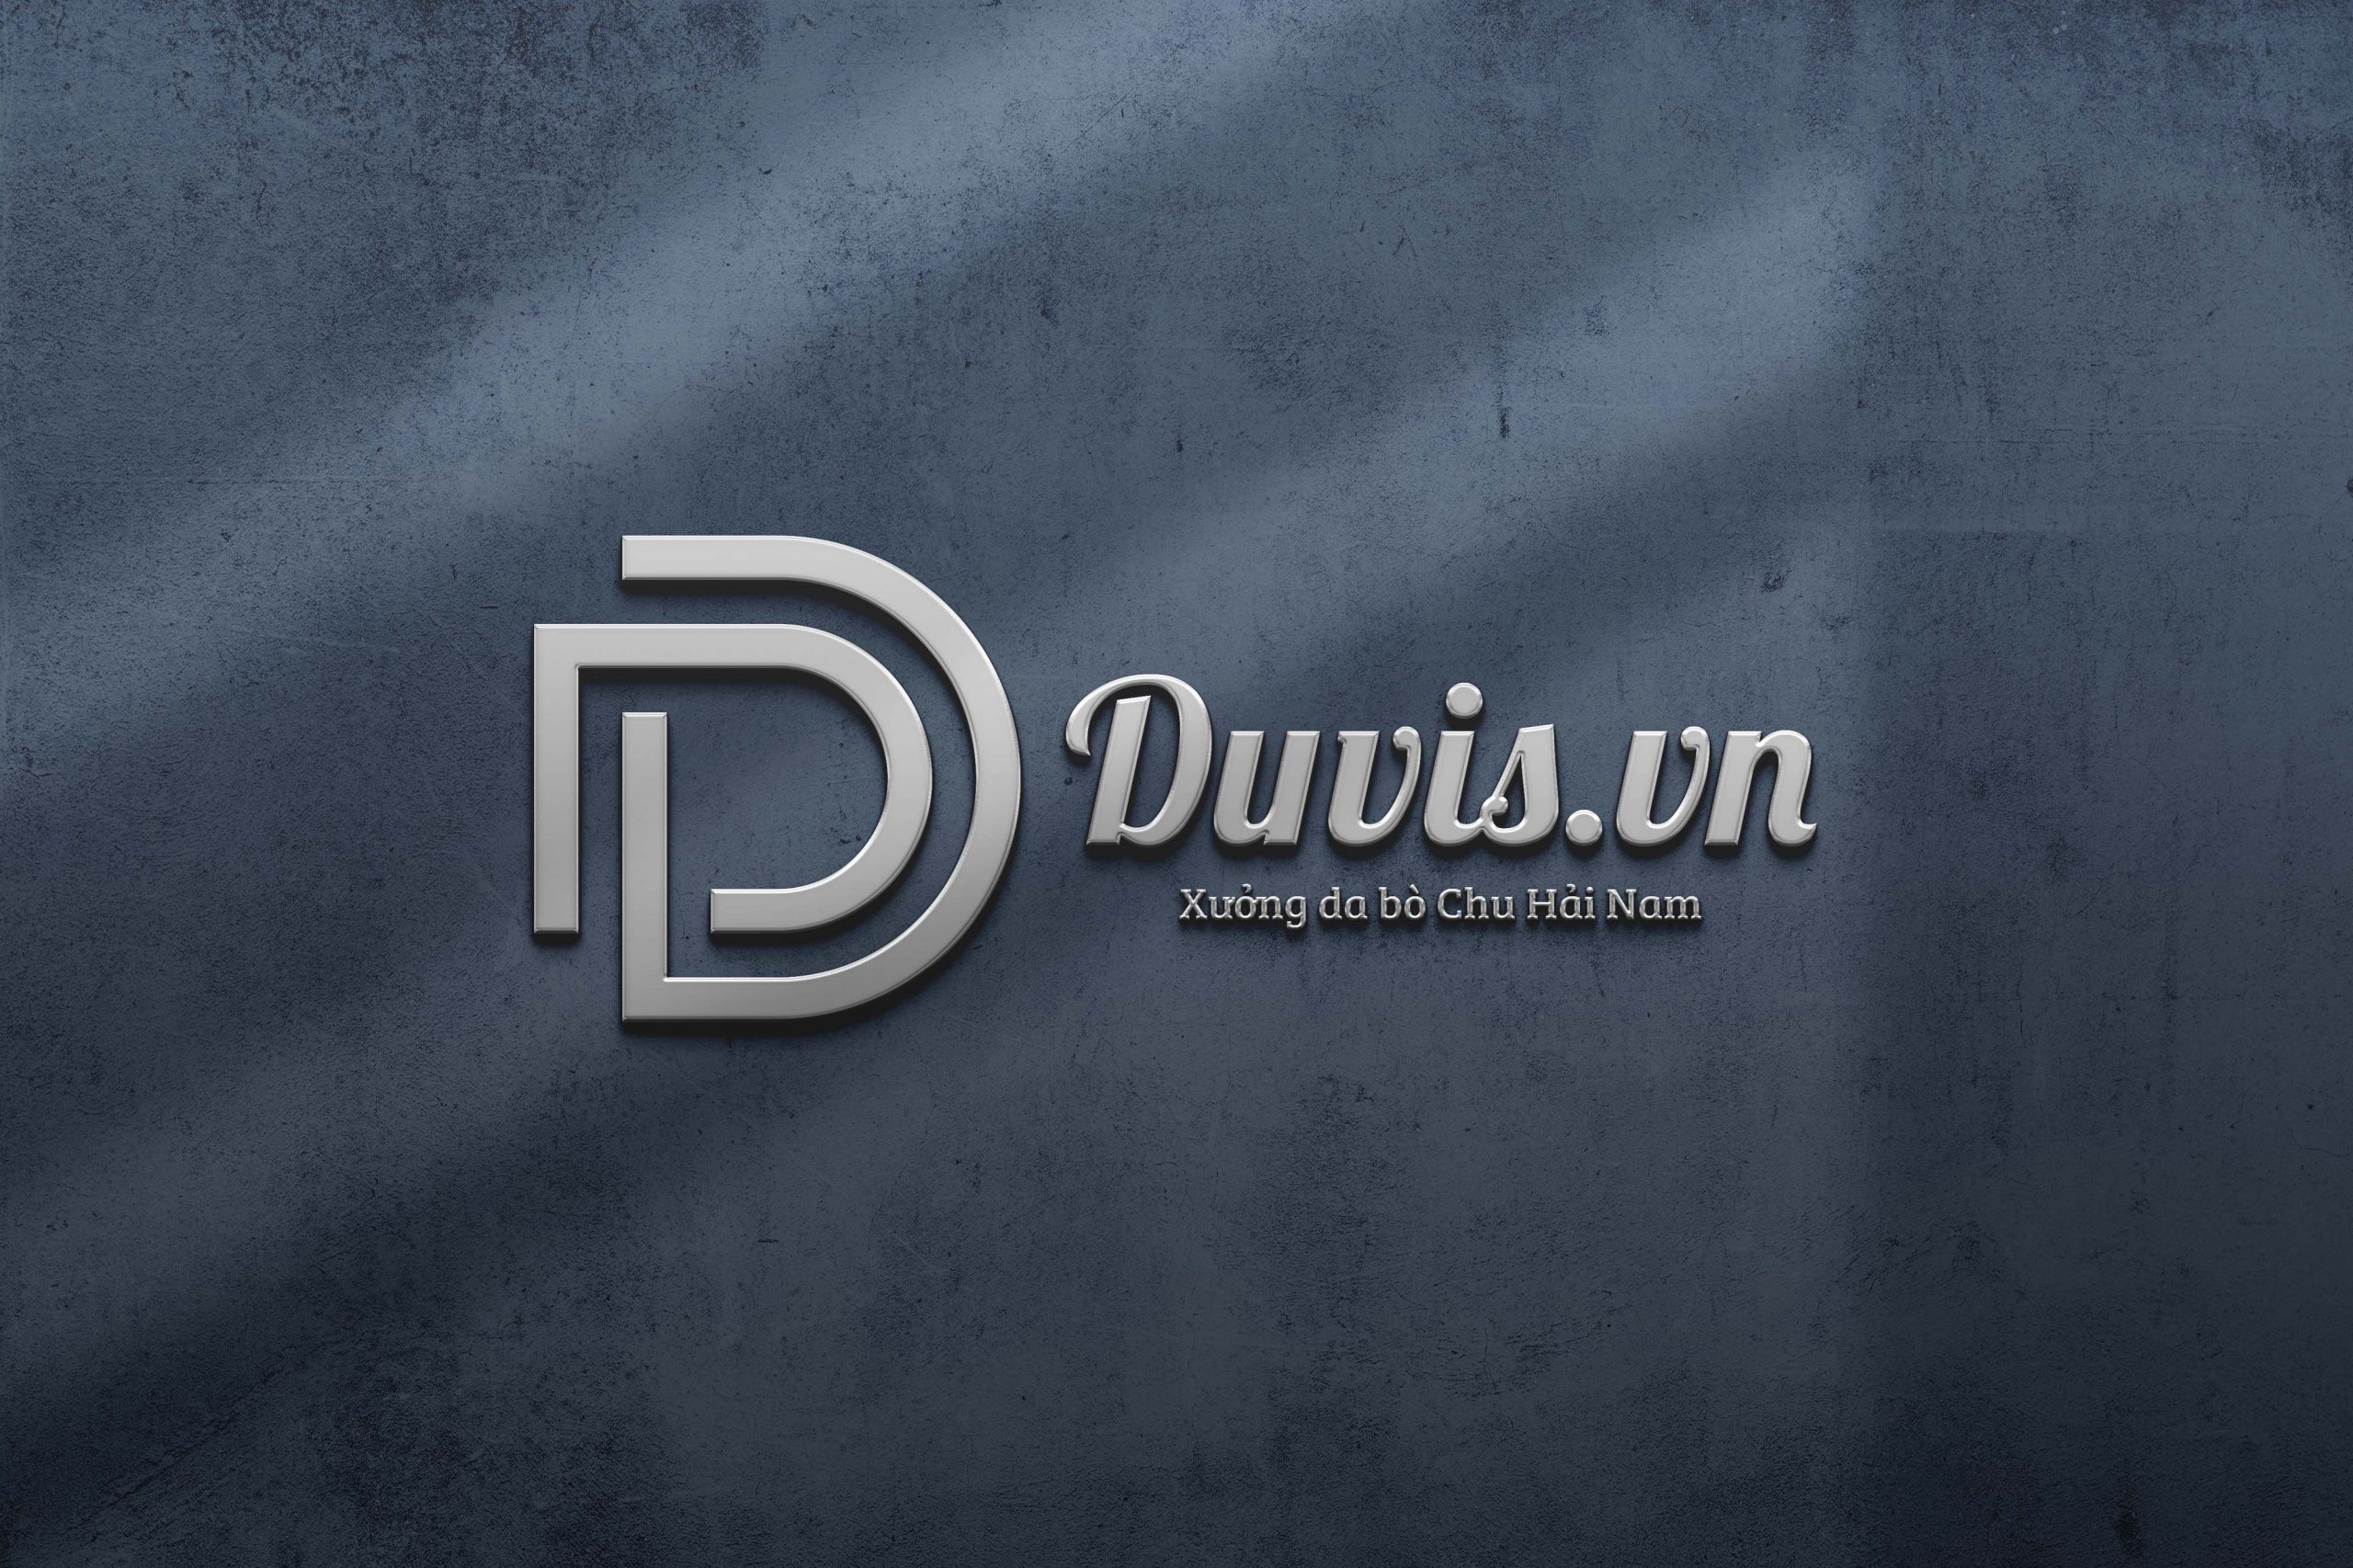 Duvis là thương hiệu độc quyền phân phối giày da và phụ kiện da bò từ xưởng da bò Chu Hải Nam